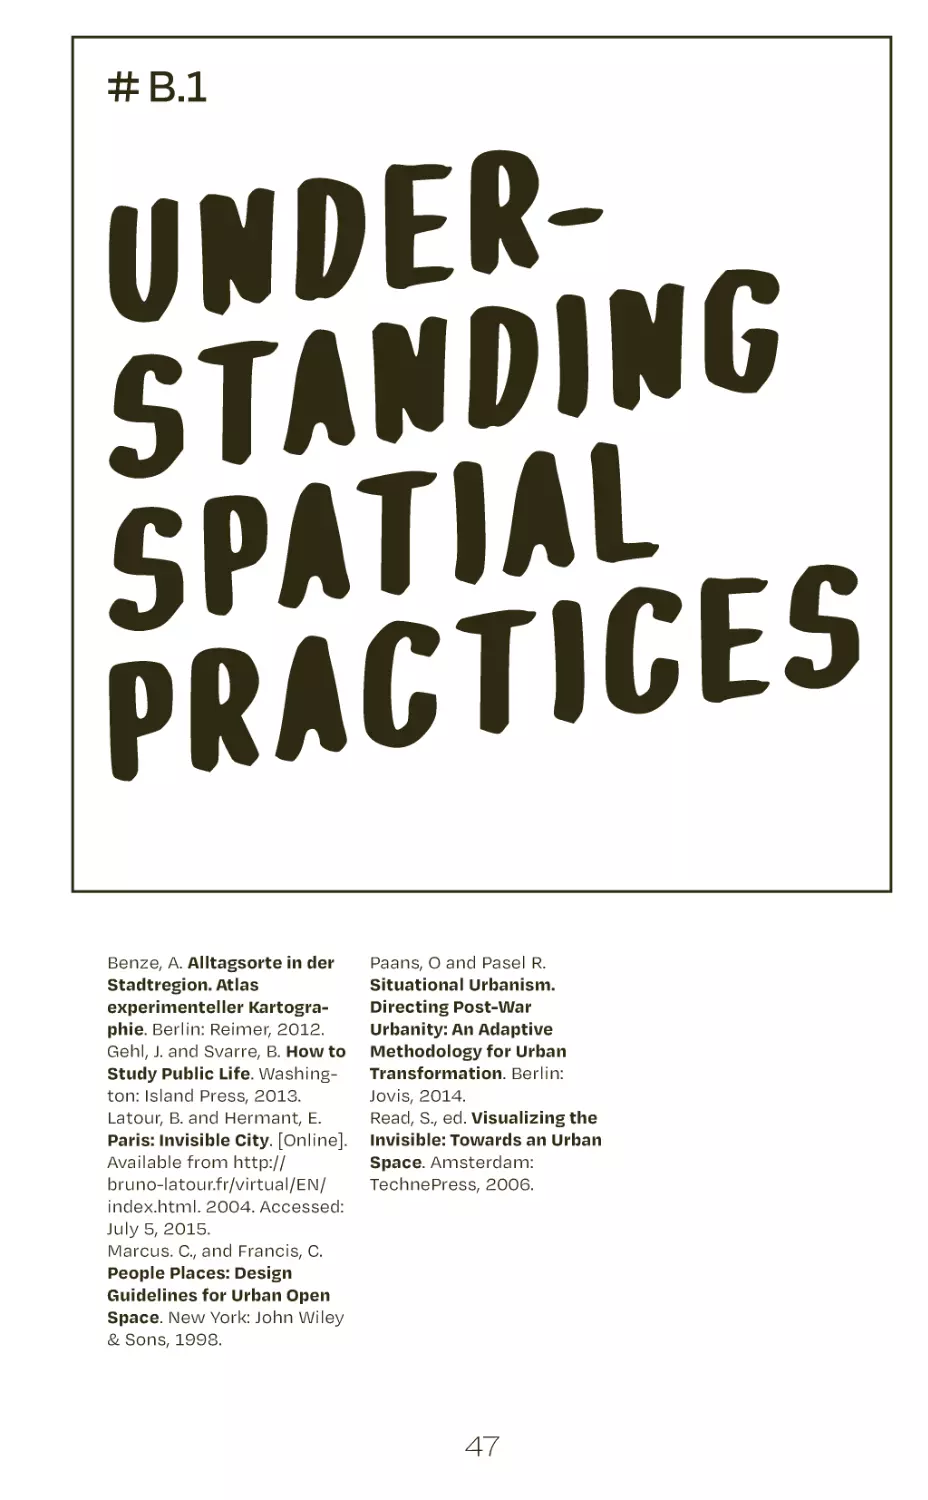 # B.1 understanding spatial practices